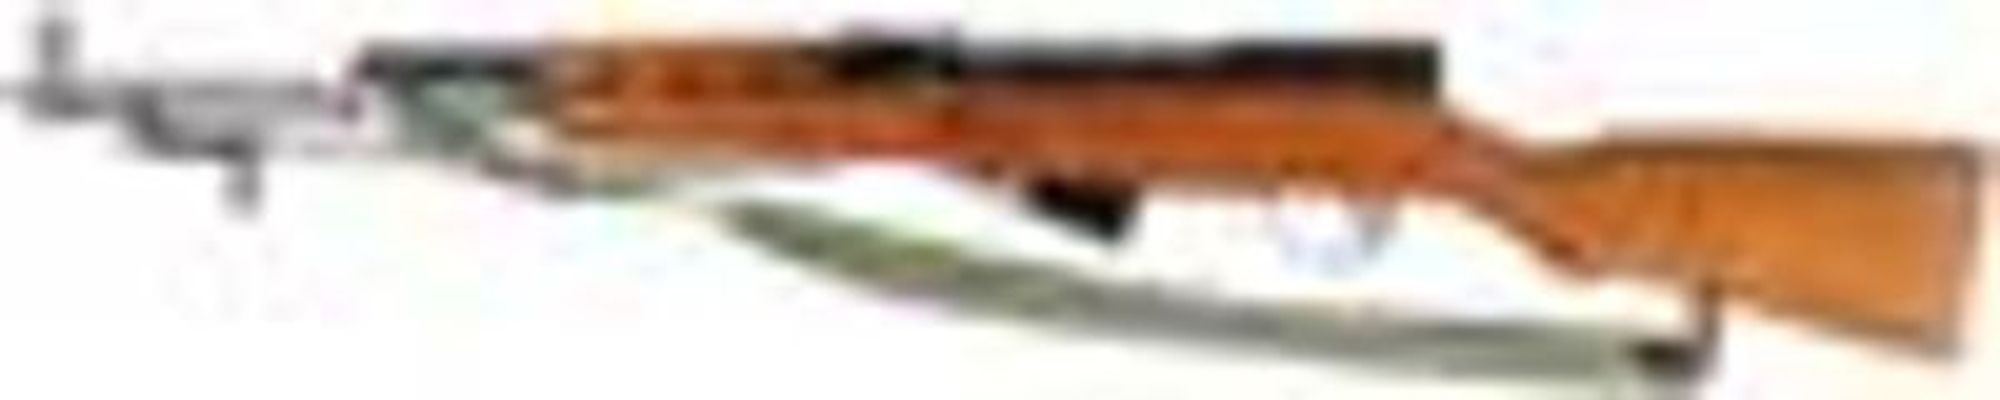 Norinco - SKS-CarbineLot 444: Norinco - SKS-Carbine